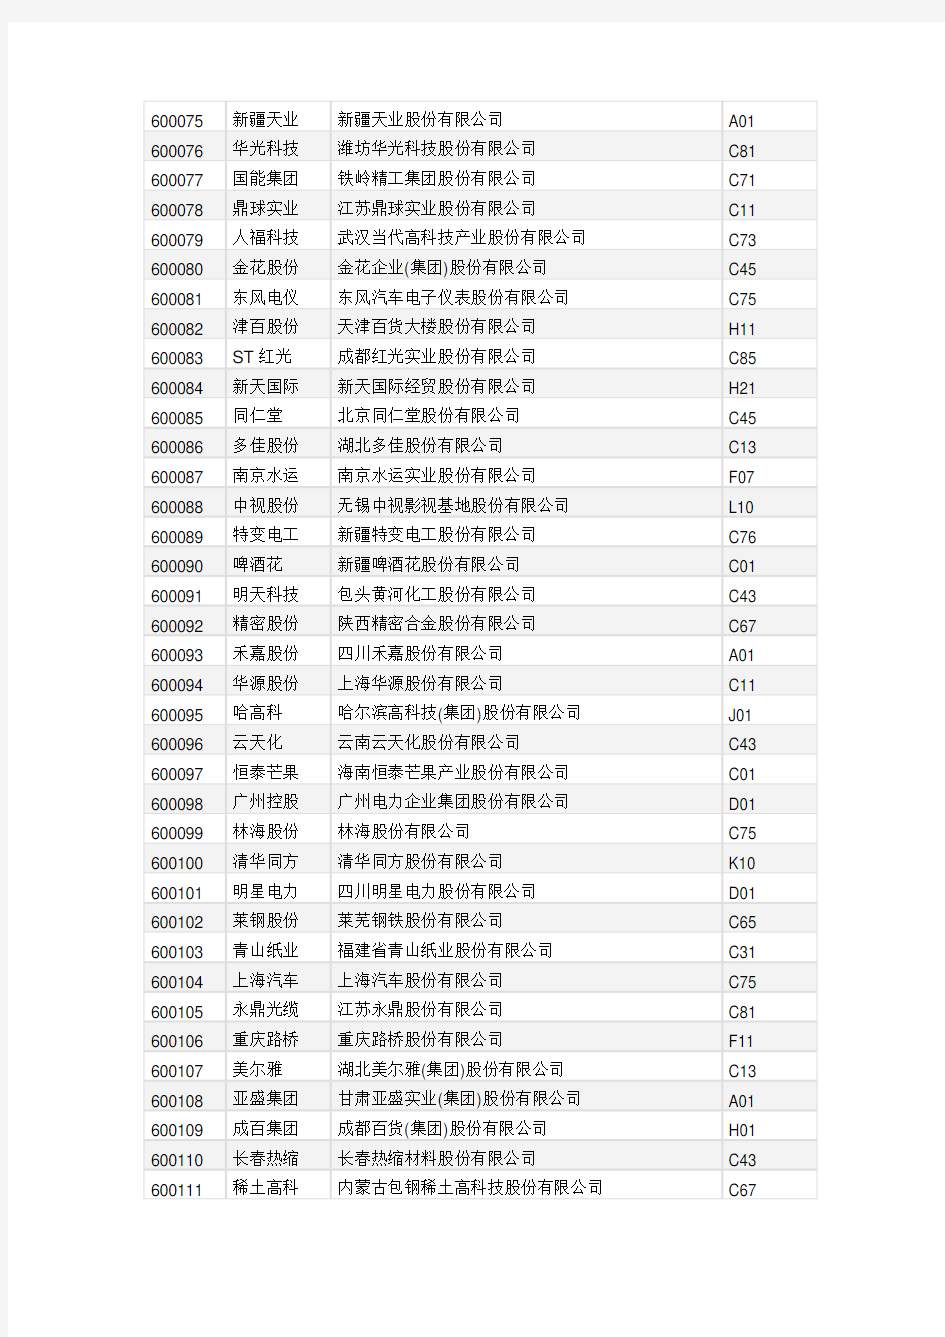 上海证券交易所上市公司行业代码一览表统计